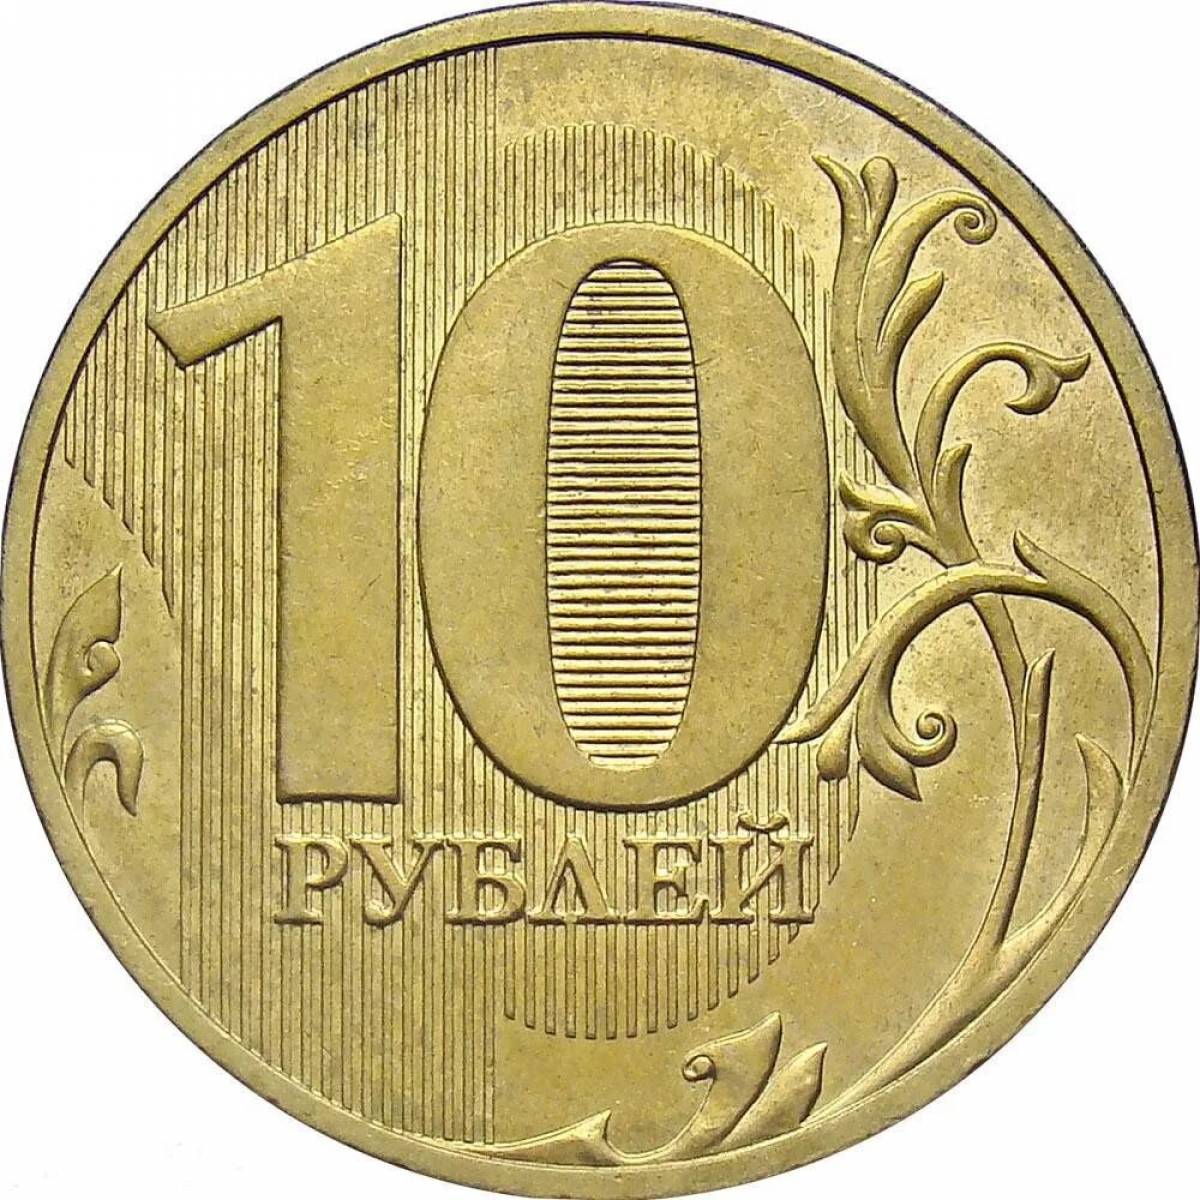 10 rubles for children #5